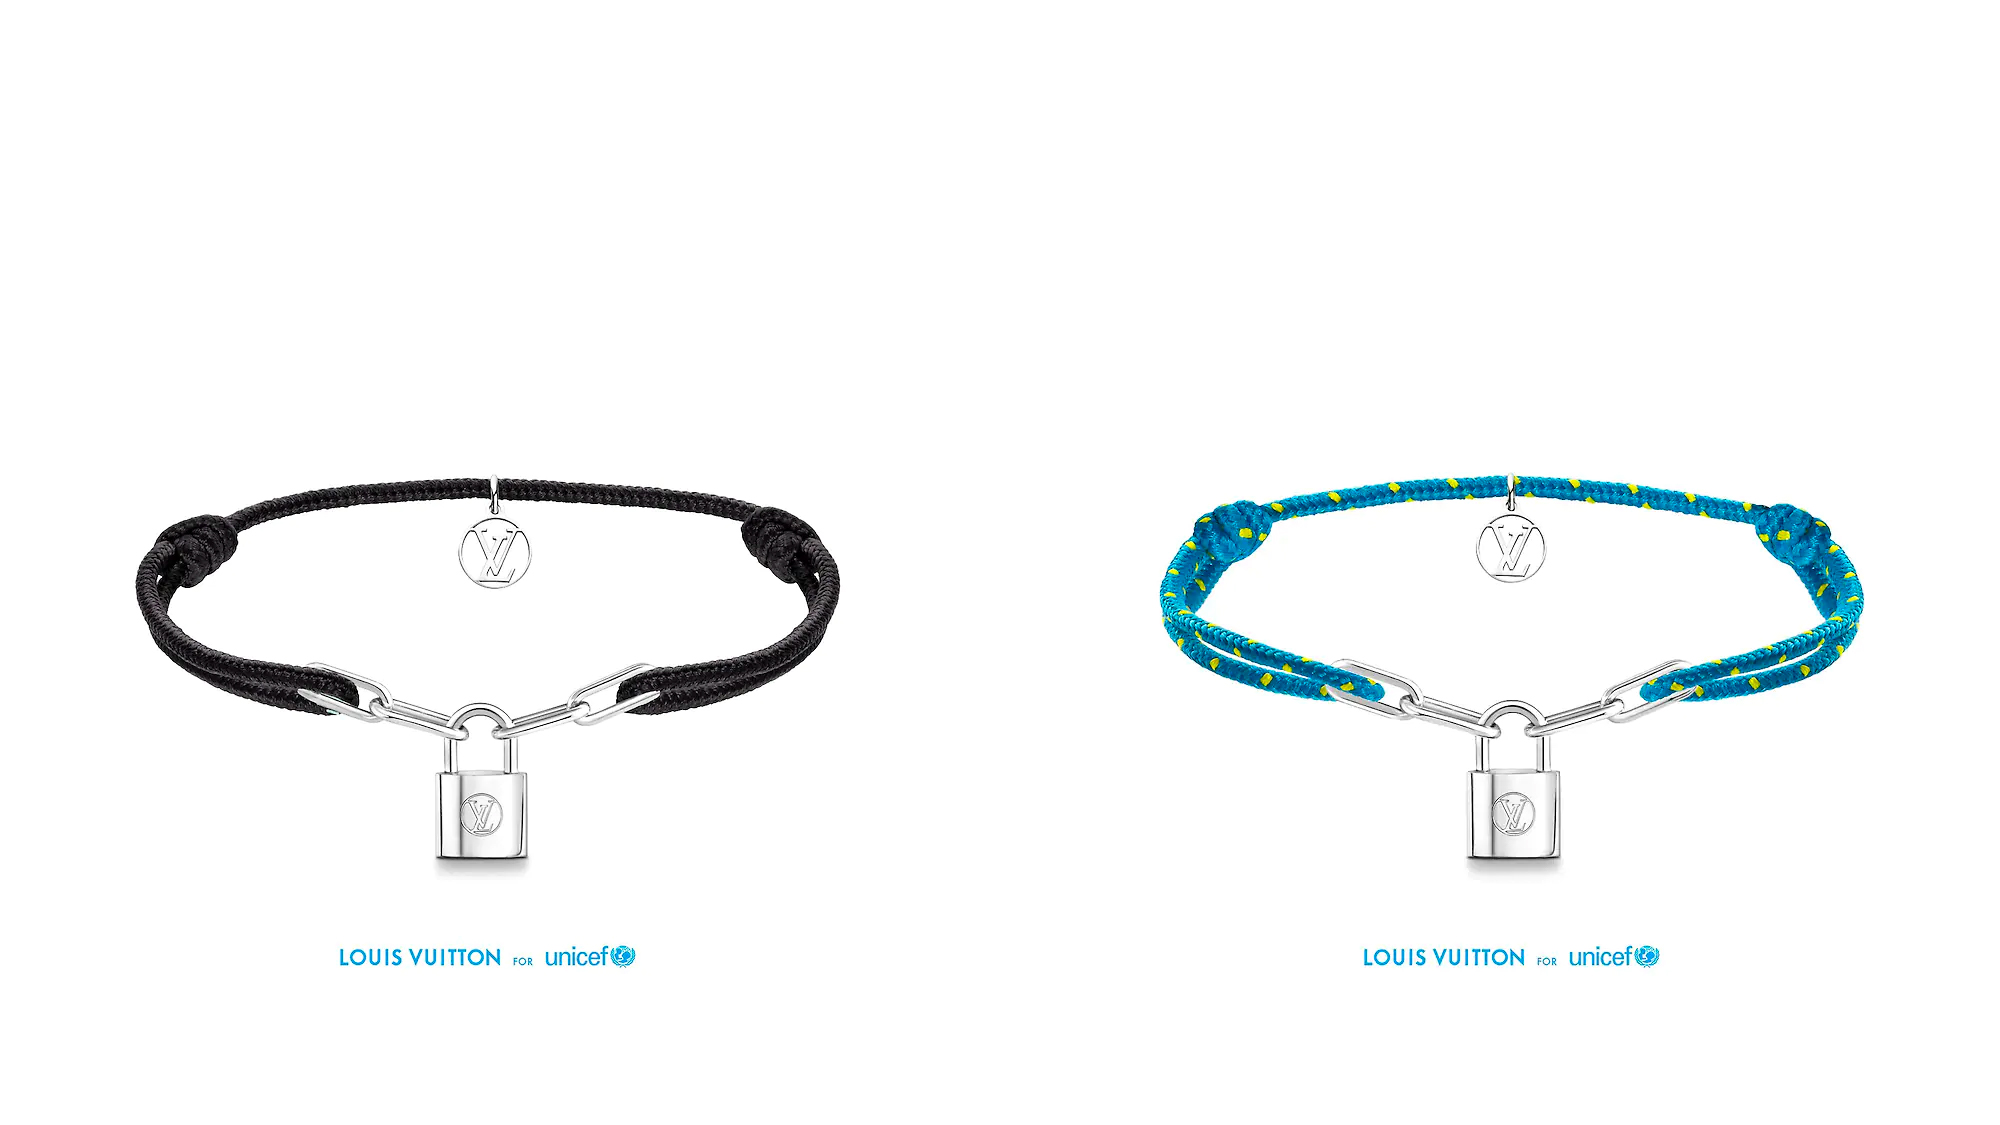 Louis Vuitton Releases Virgil Abloh-Designed UNICEF Bracelets